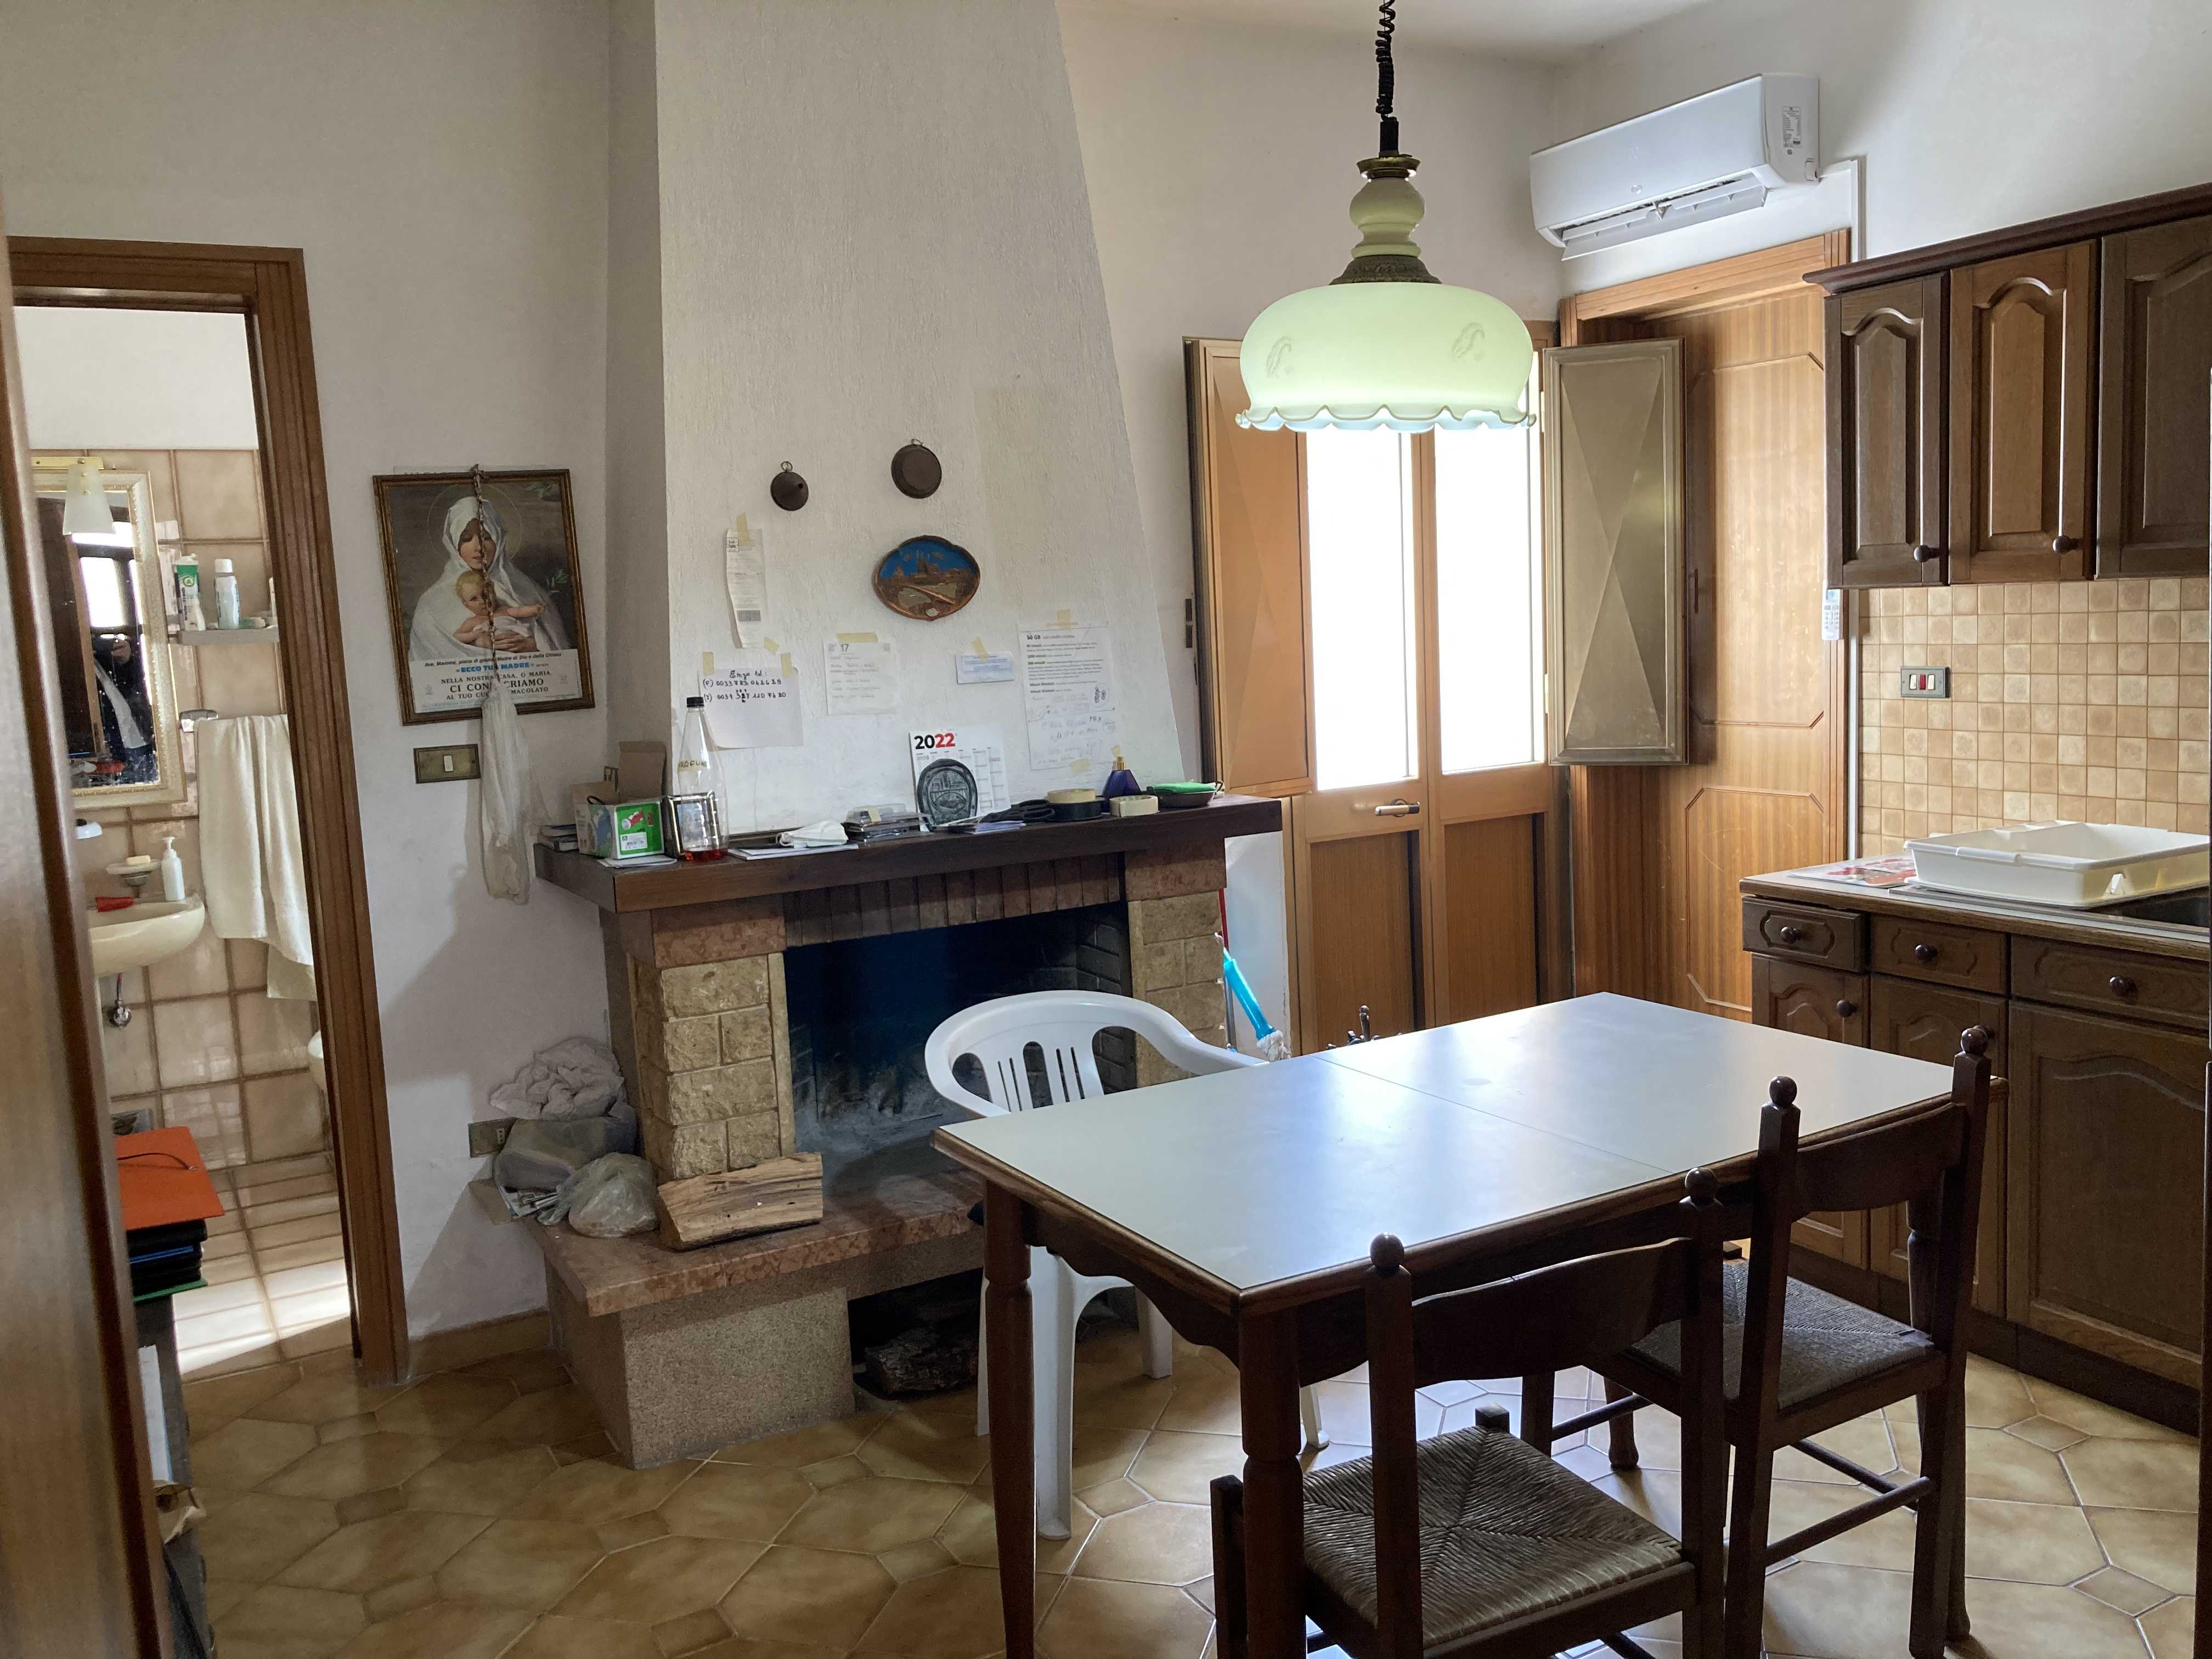 Vendite Salento: Vendita appartamento (Castrignano del Capo) - cucina1